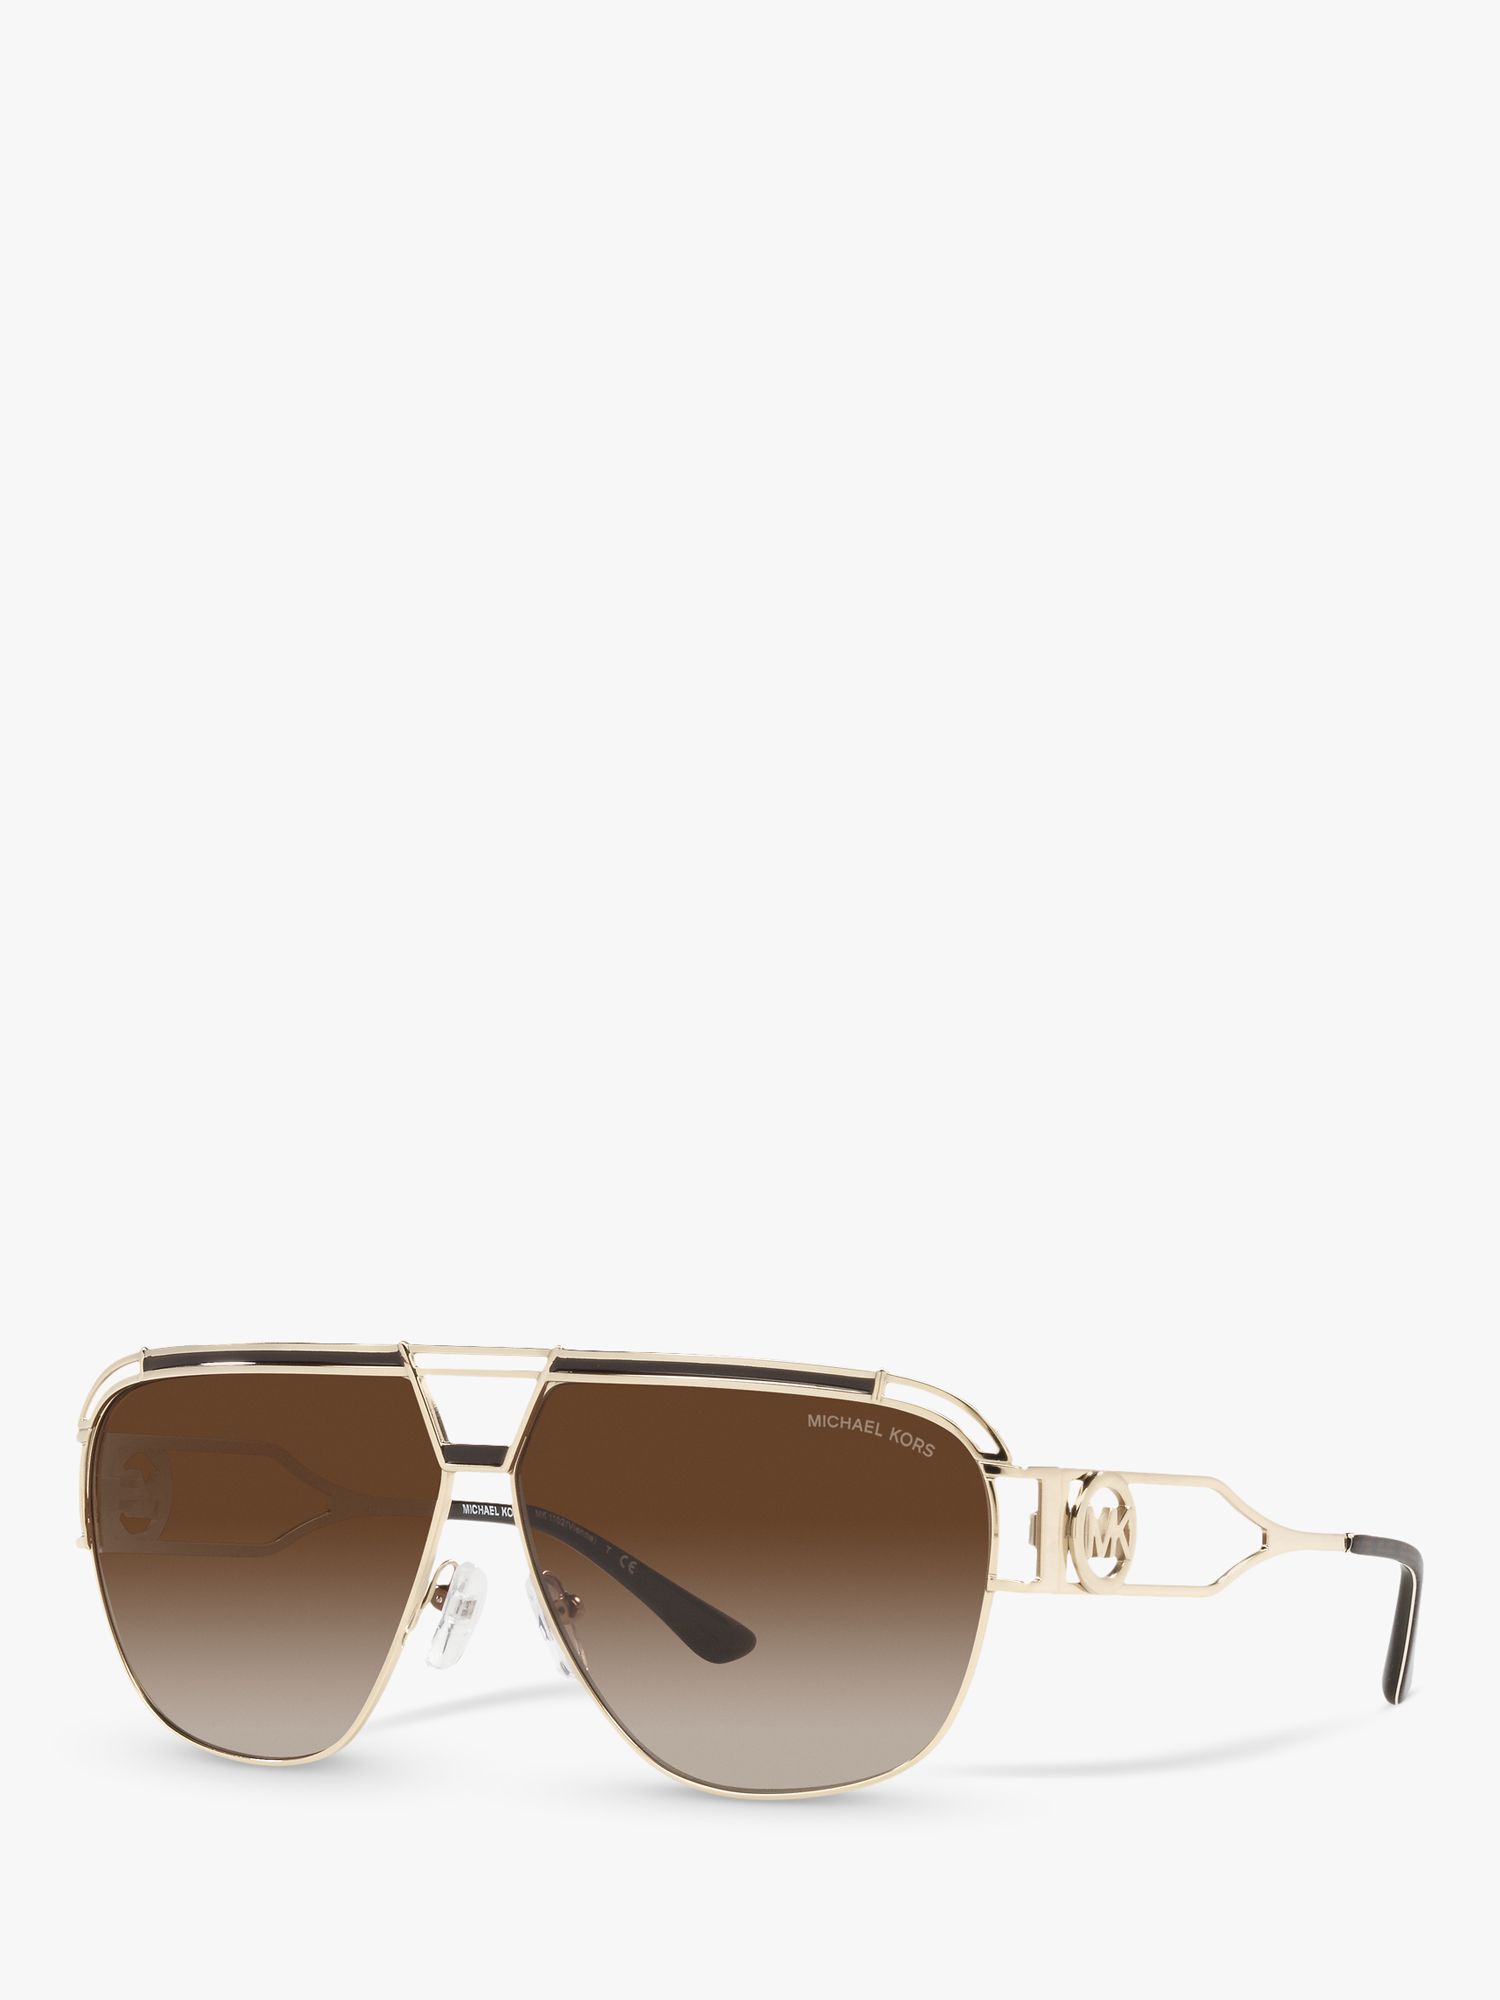 Michael Kors MK1102 Women's Vienna Aviator Sunglasses, Gold/Brown ...